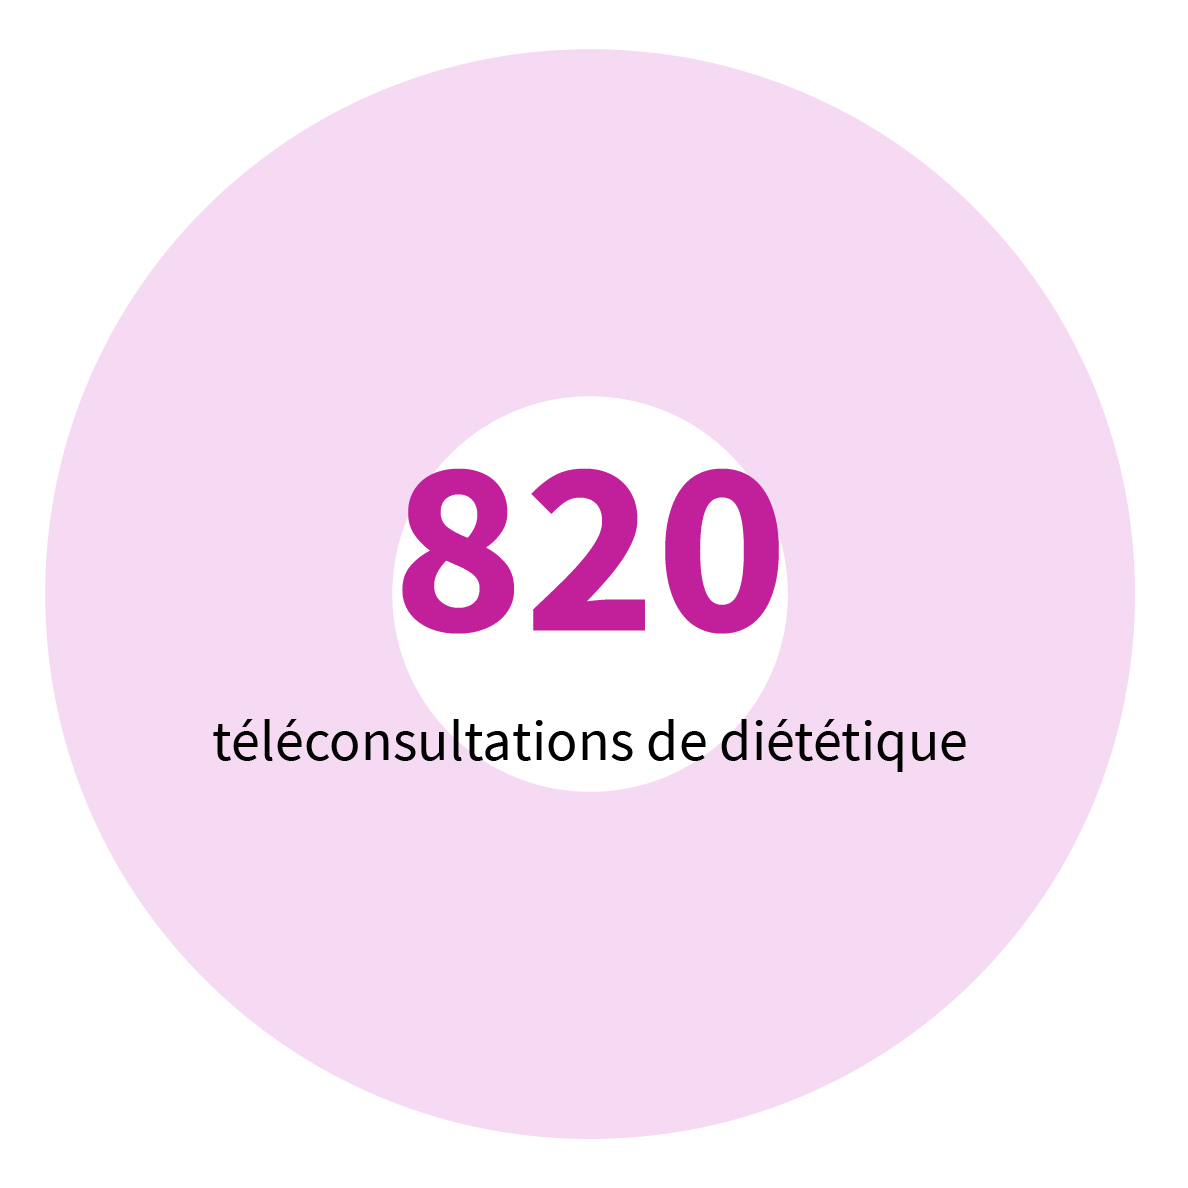 820 téléconsultations de diététique.